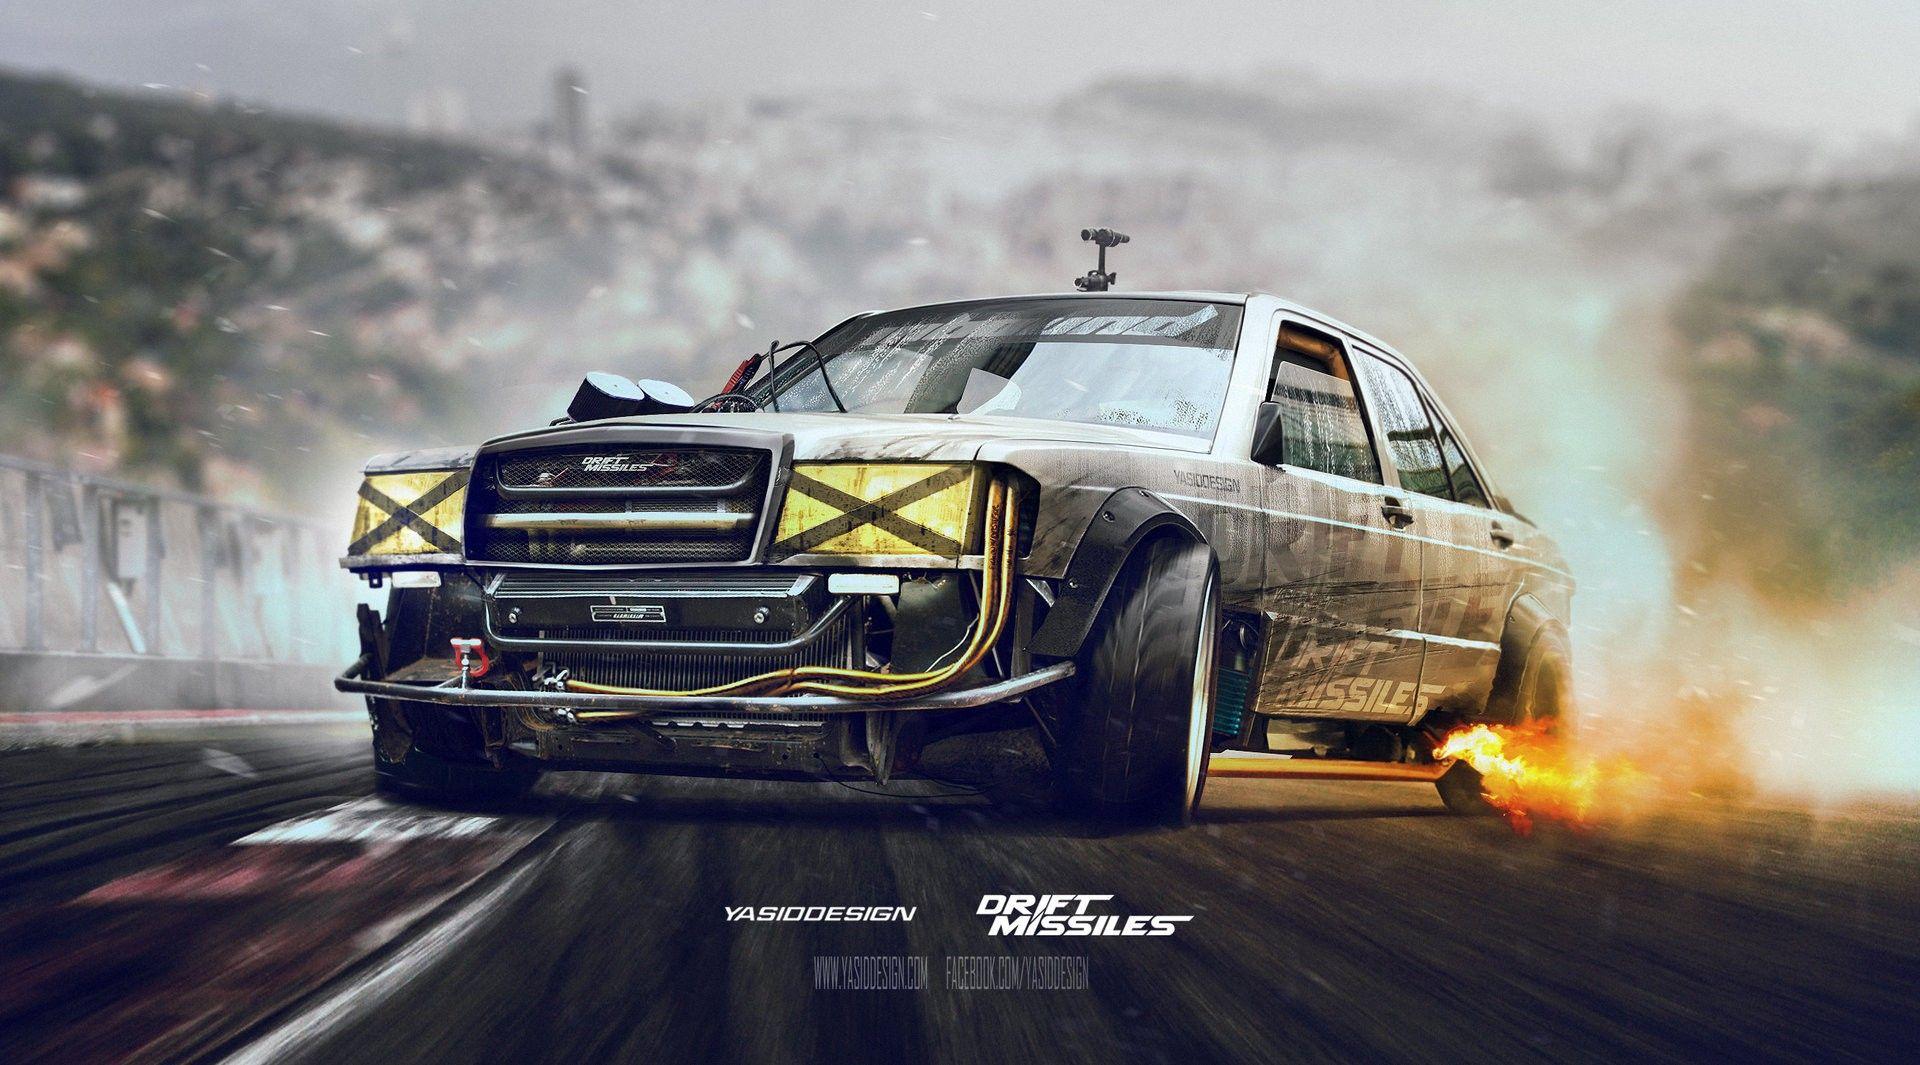 Mercedes Benz, Drift, Car, Adobe Photohop, Drift Missile Wallpaper